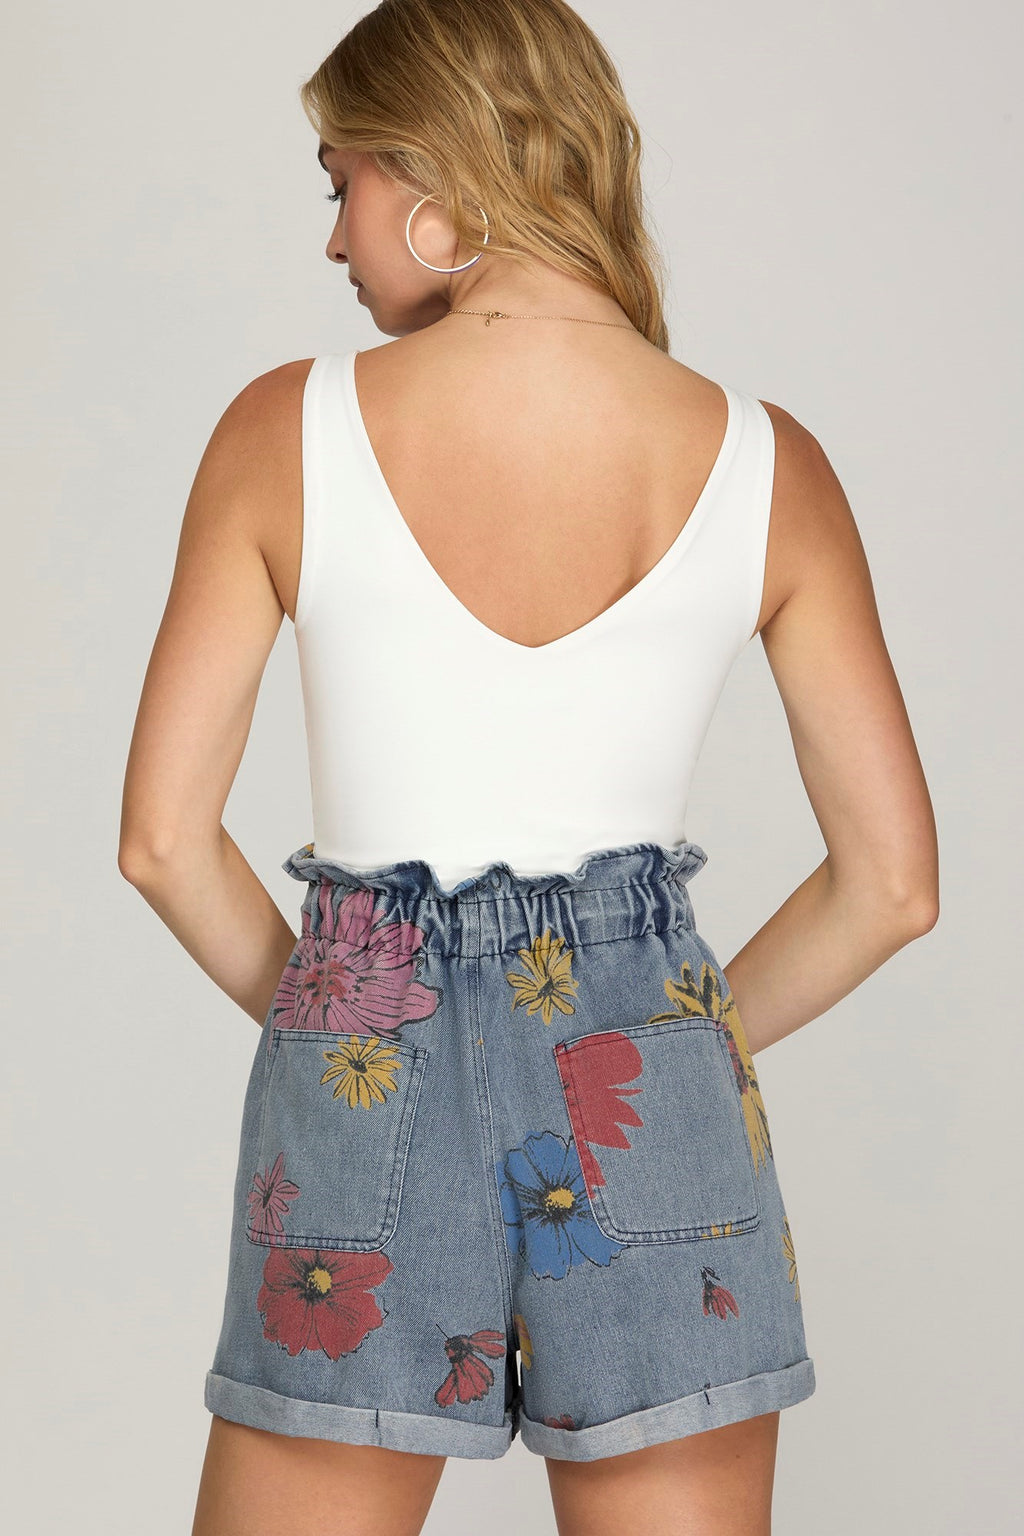 "Mandy" Floral Denim Shorts - The Katie Grace Boutique